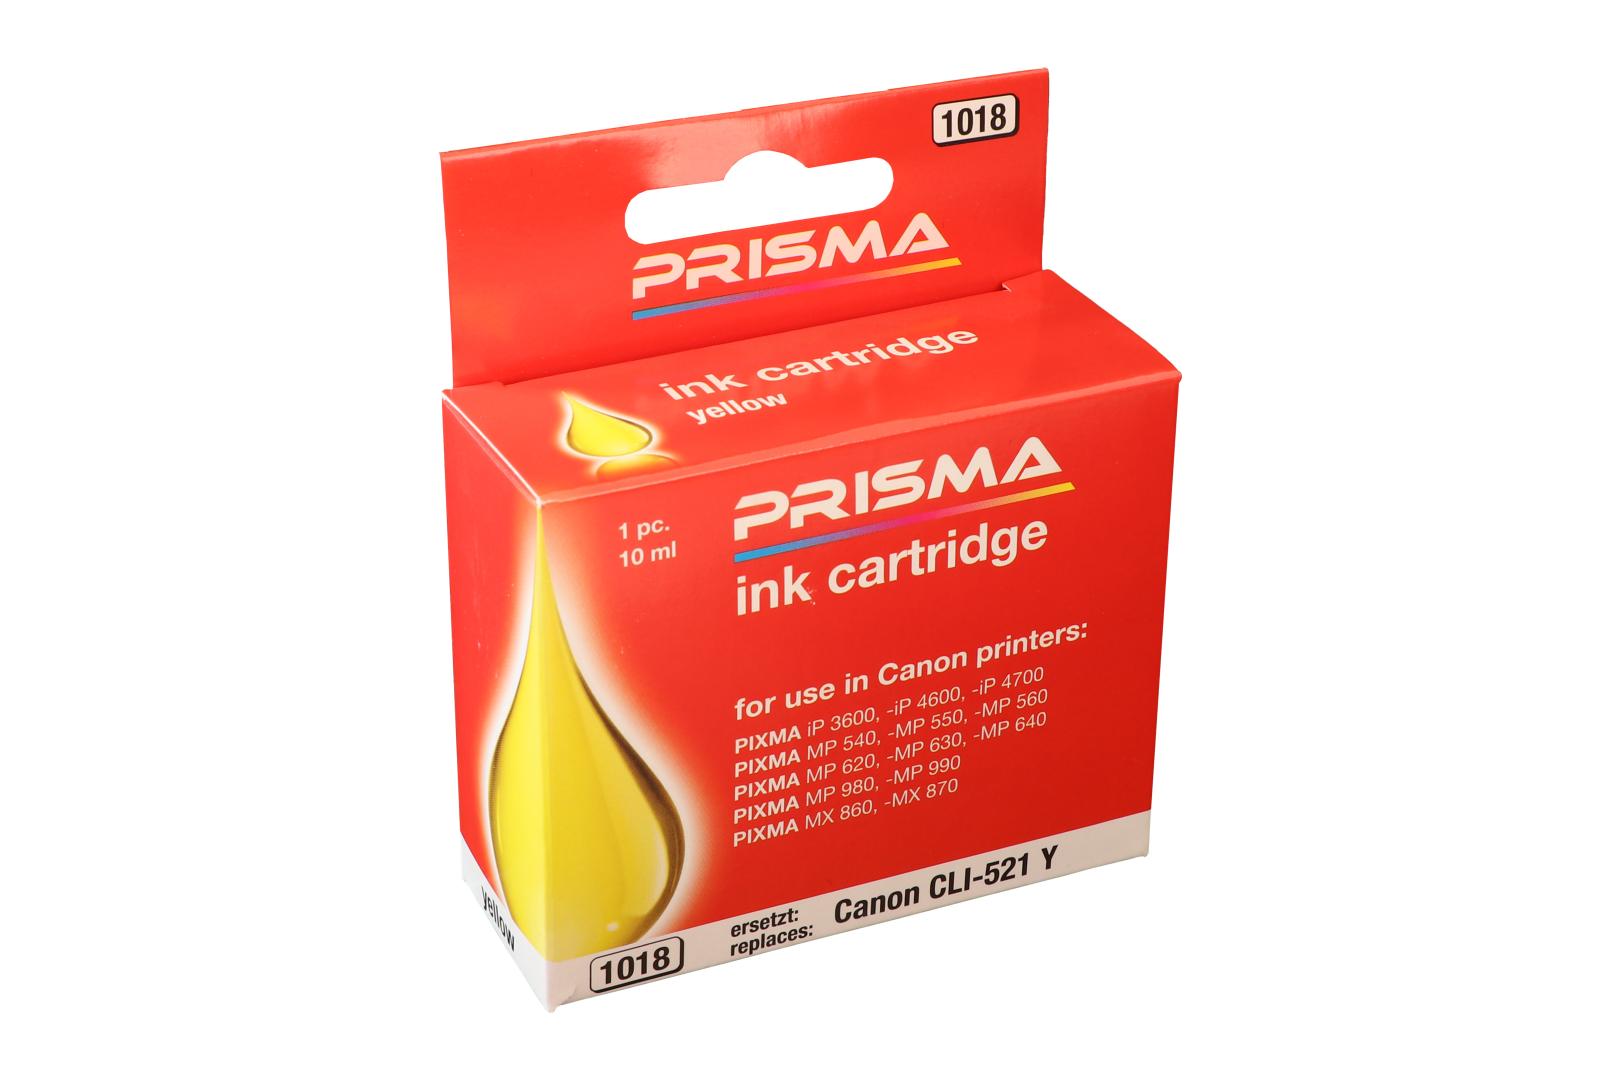 PRISMA 1018 Druckerpatrone für Canon Tintenstrahldrucker, yellow, 10 ml